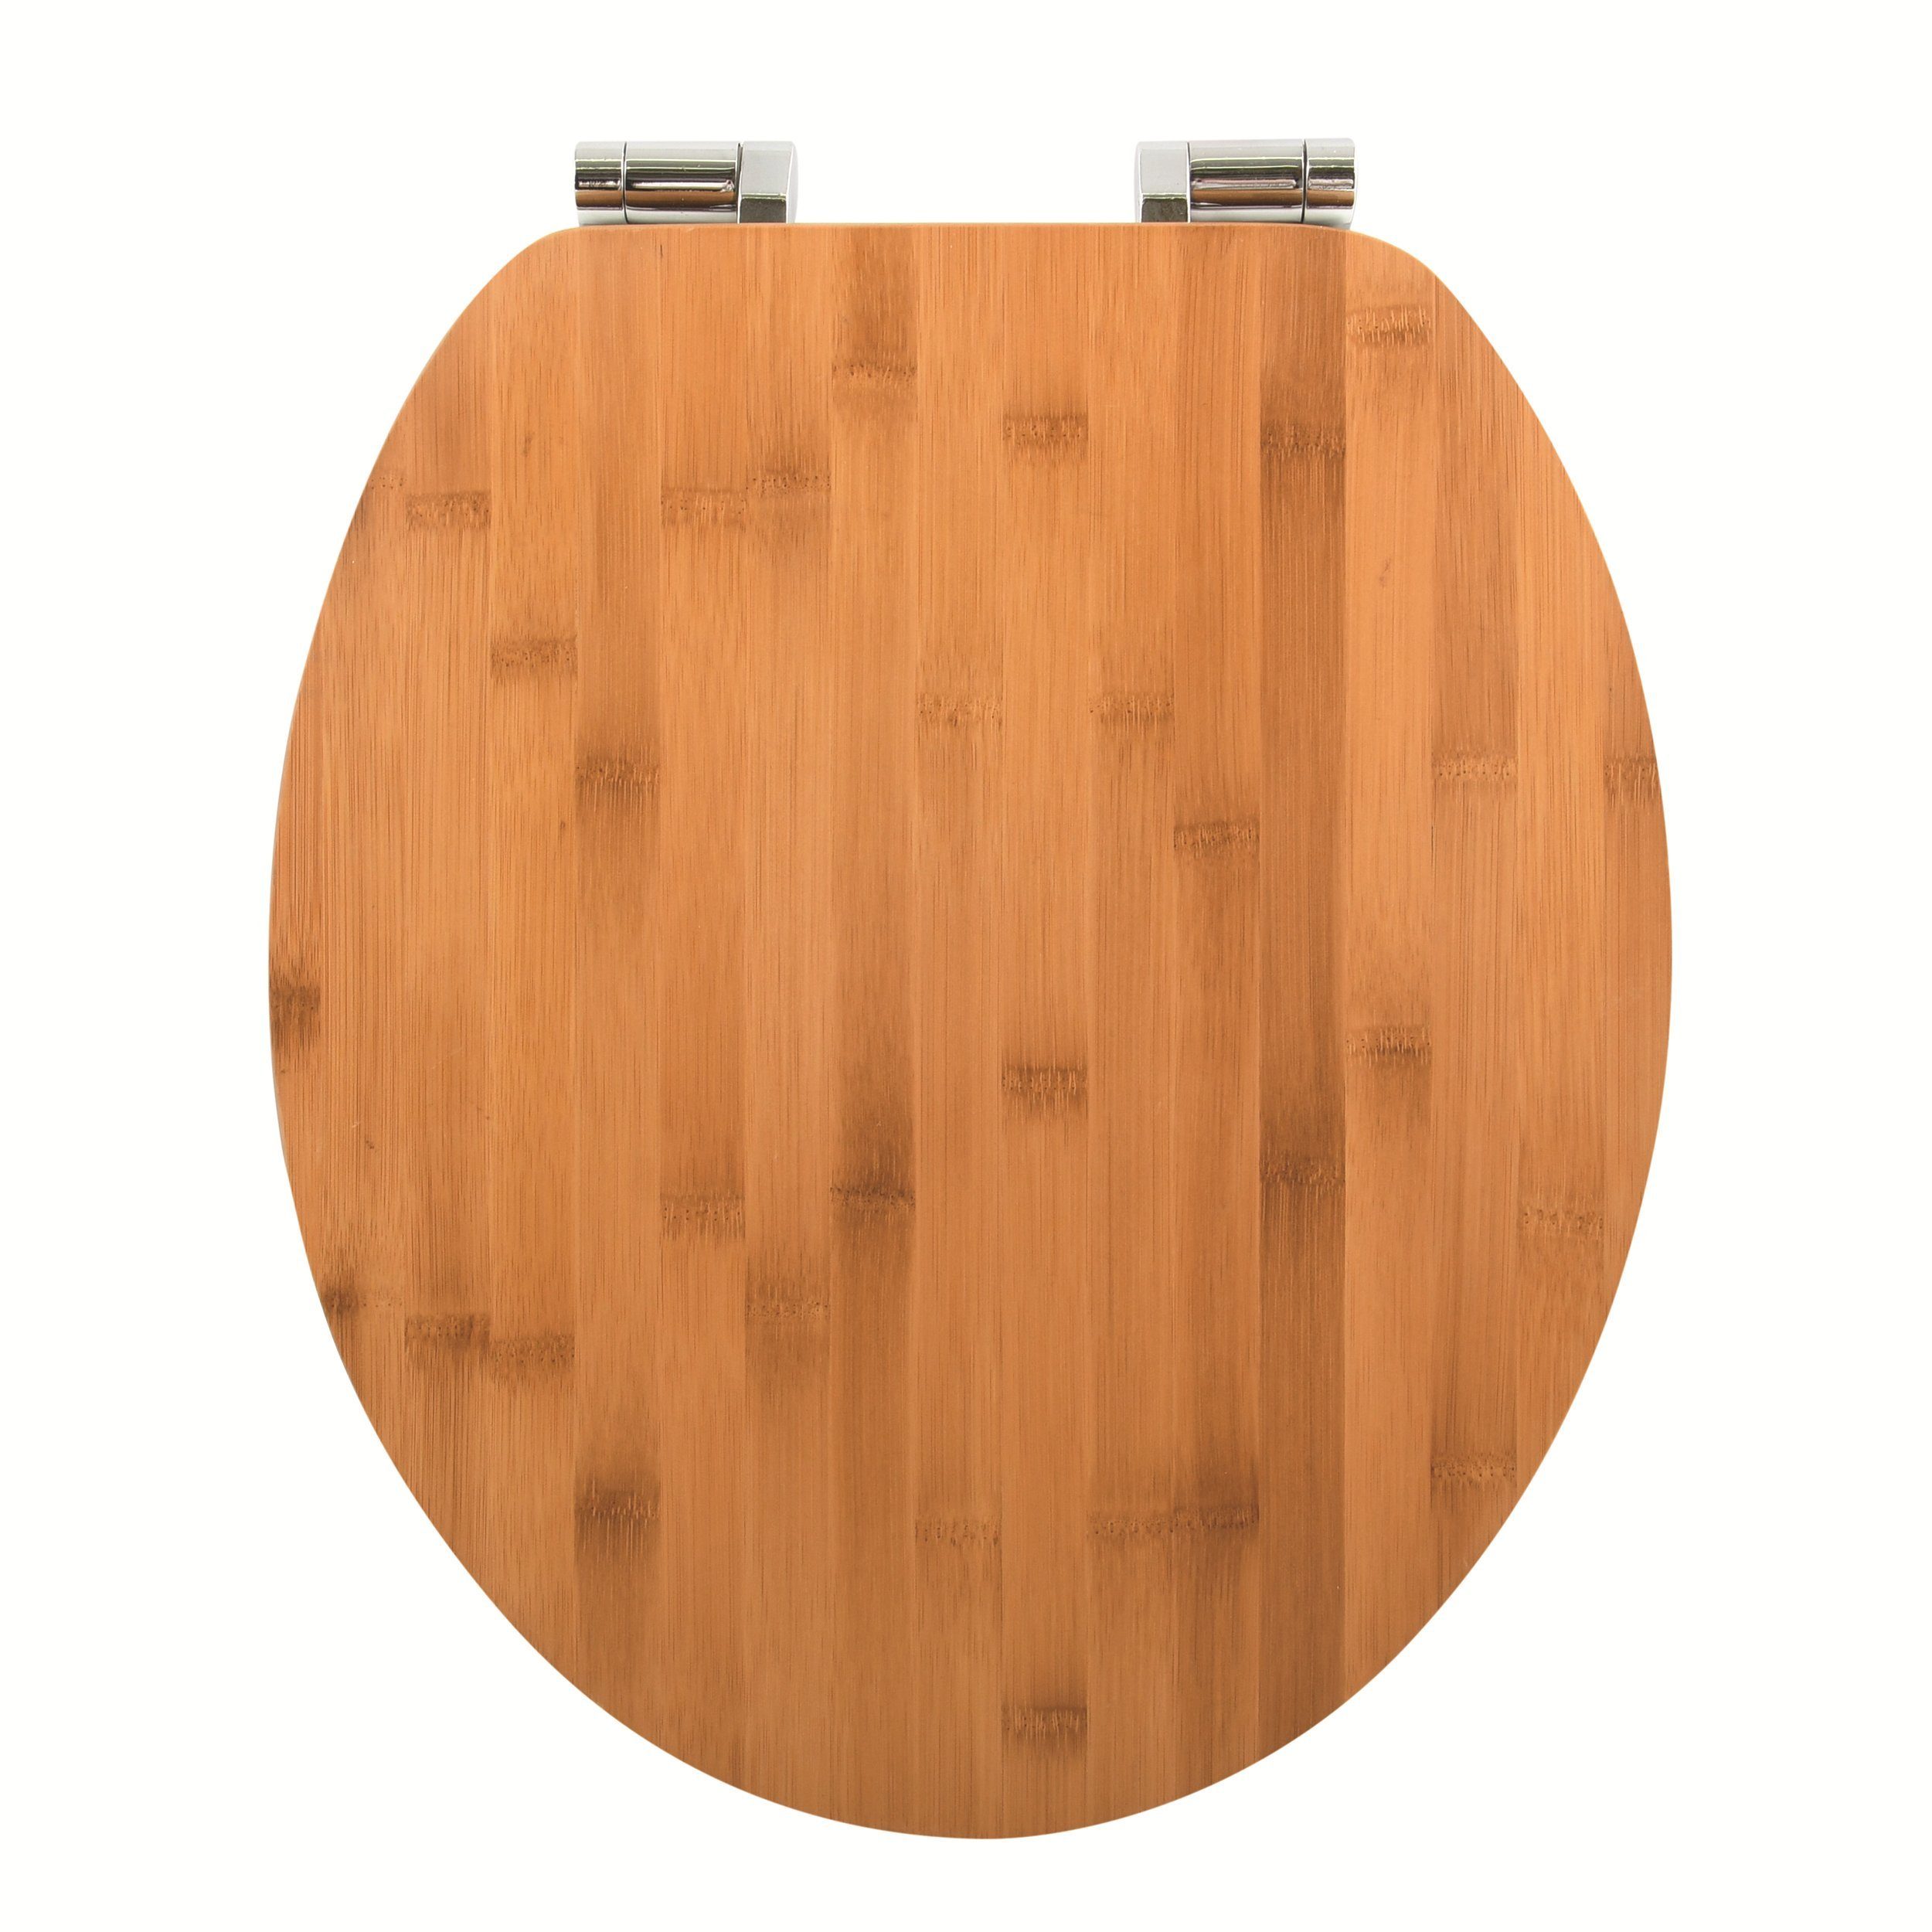 spirella WC-Sitz OSLO, Toilettendeckel aus Bambus, mit Absenkautomatik - hochwertige und solide Qualität